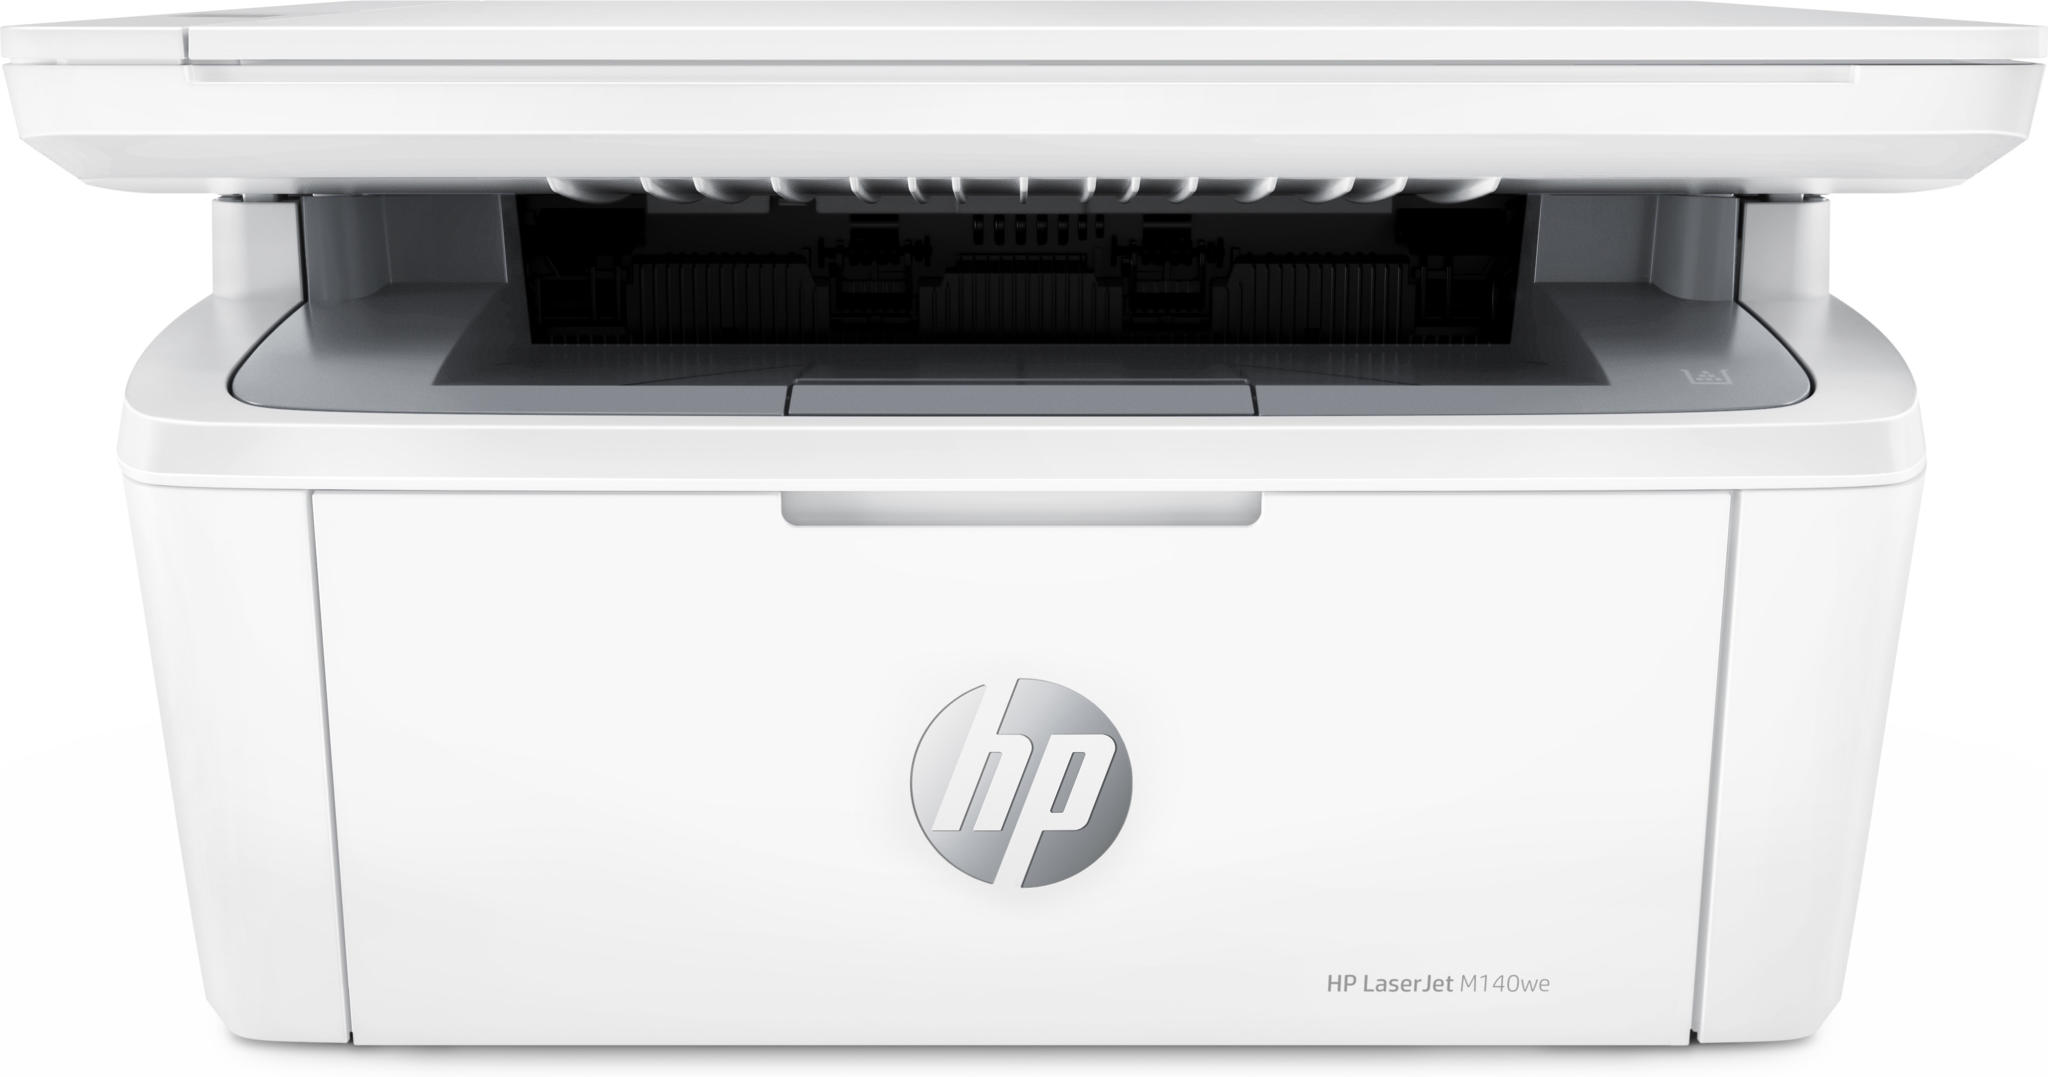 Aanbieding Printers. HP Laserjet M140we printer